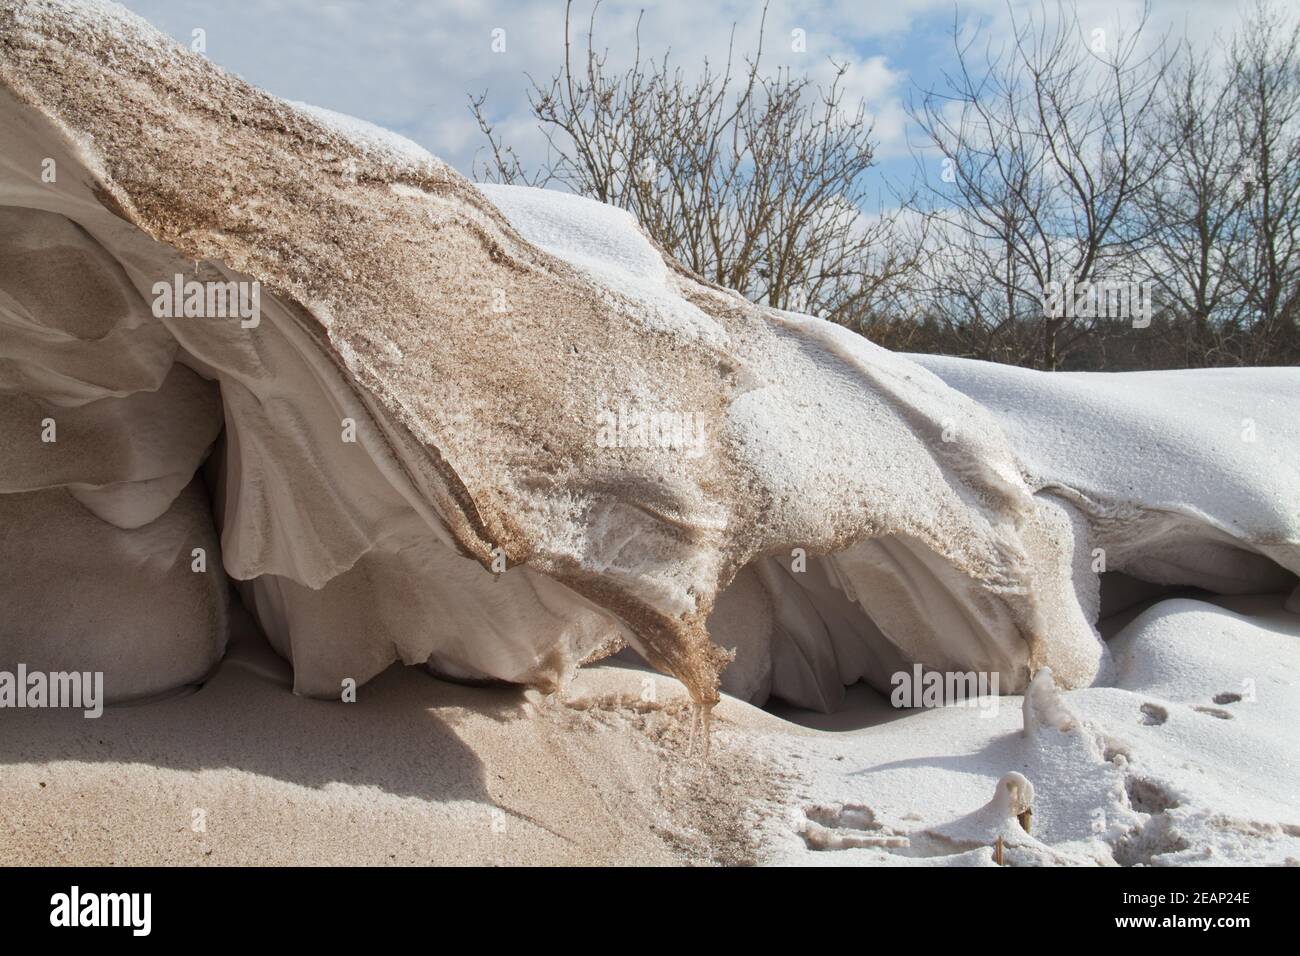 Snowdrift, un dépôt de neige et un peu de sable sculptés par le vent dans un monticule pendant une tempête de neige Banque D'Images